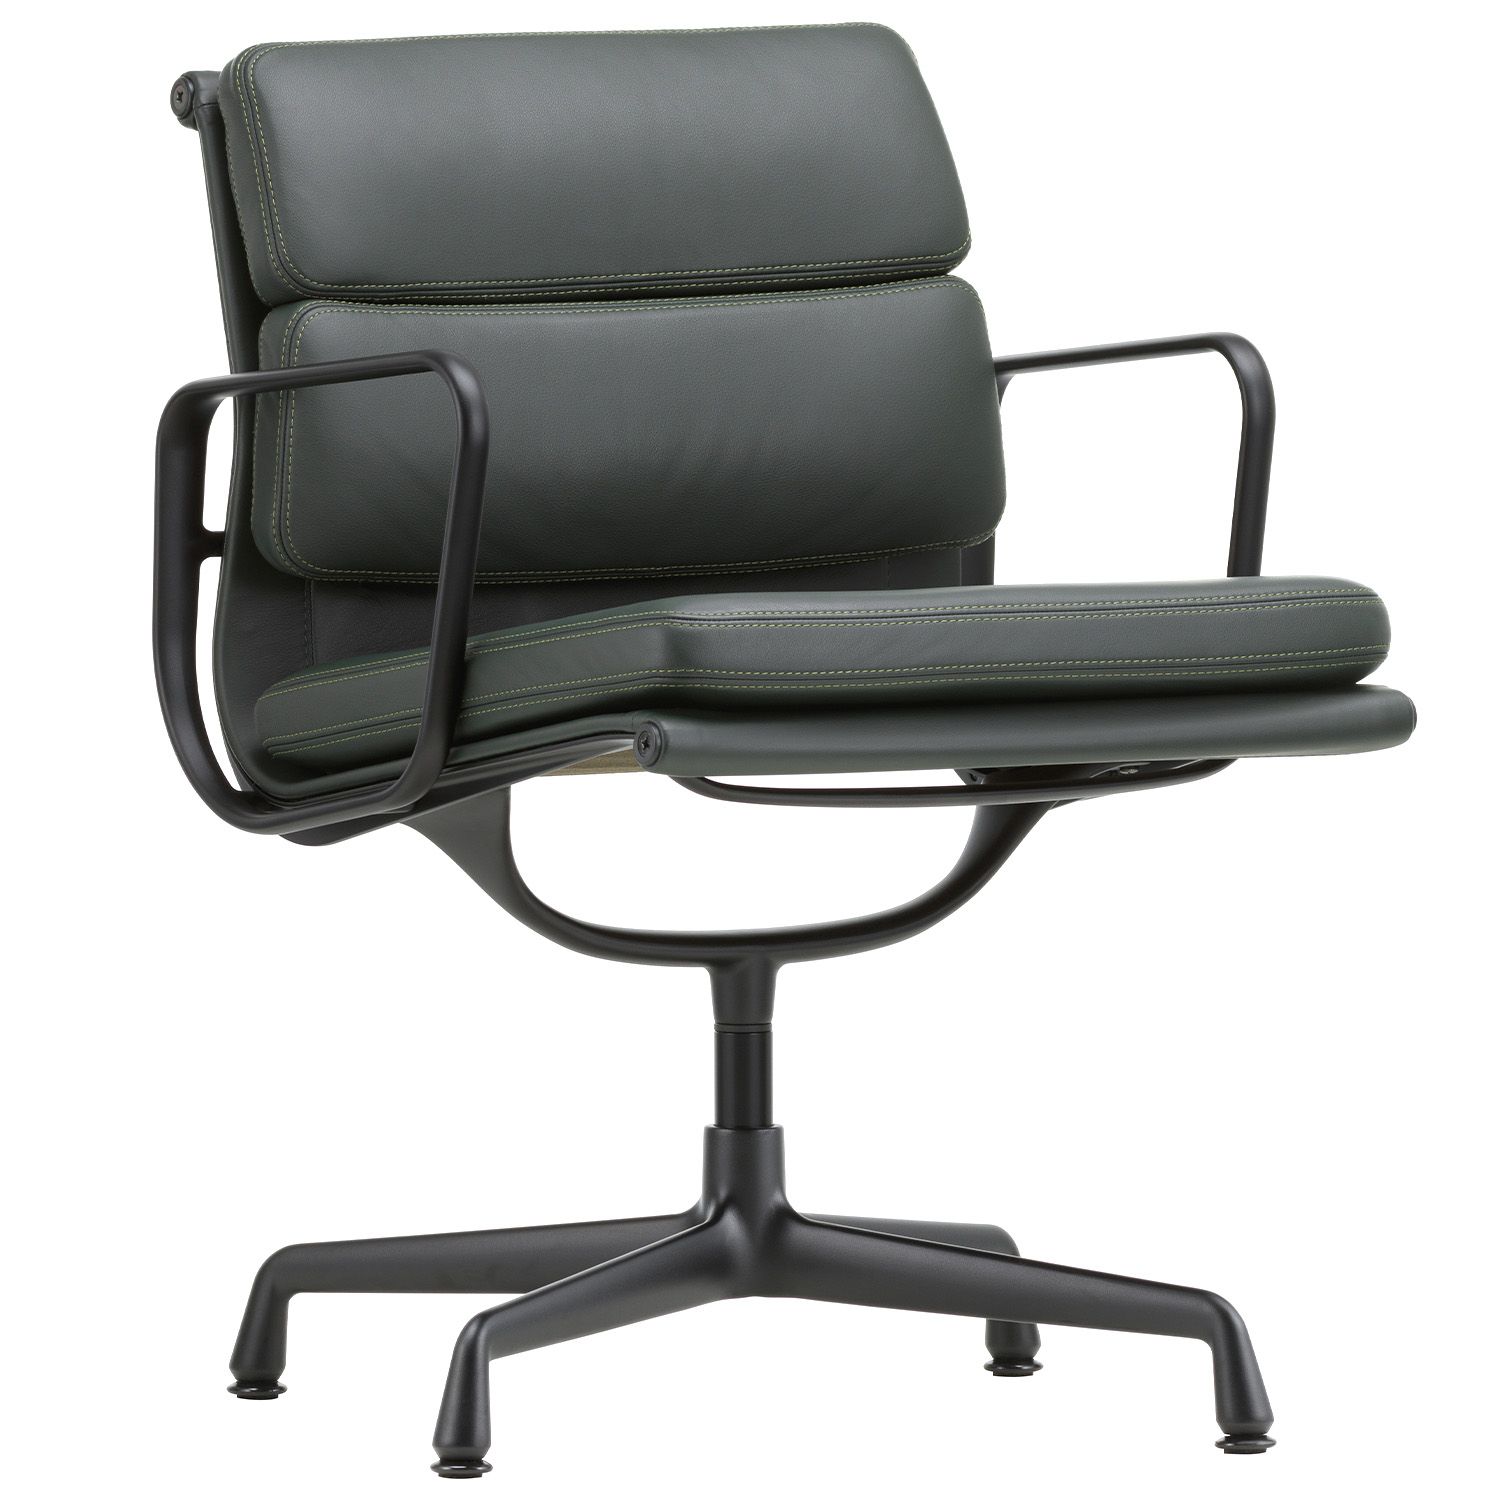 Vitra designové židle/ konferenční židle Soft Pad Chairs EA 207 / 208 - DESIGNPROPAGANDA